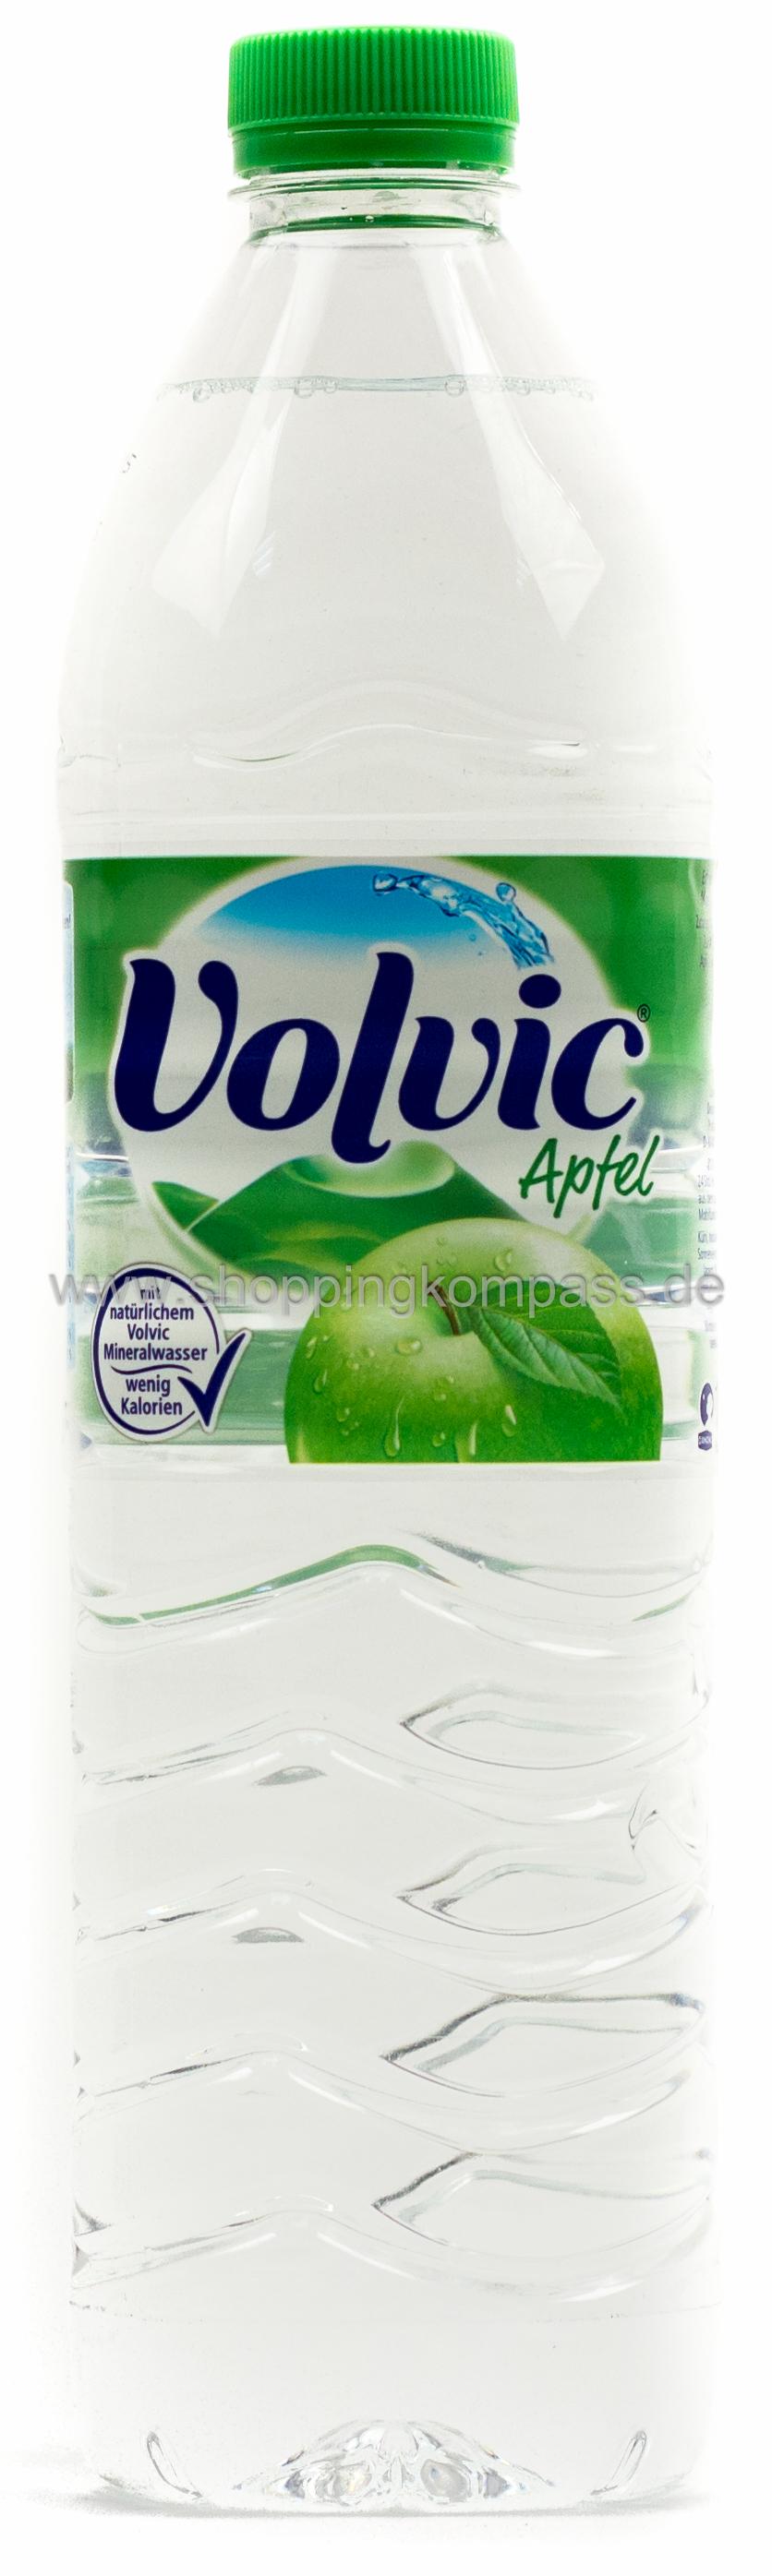 Volvic Touch Apfel Kasten 6 x 1,5 l PET Einweg